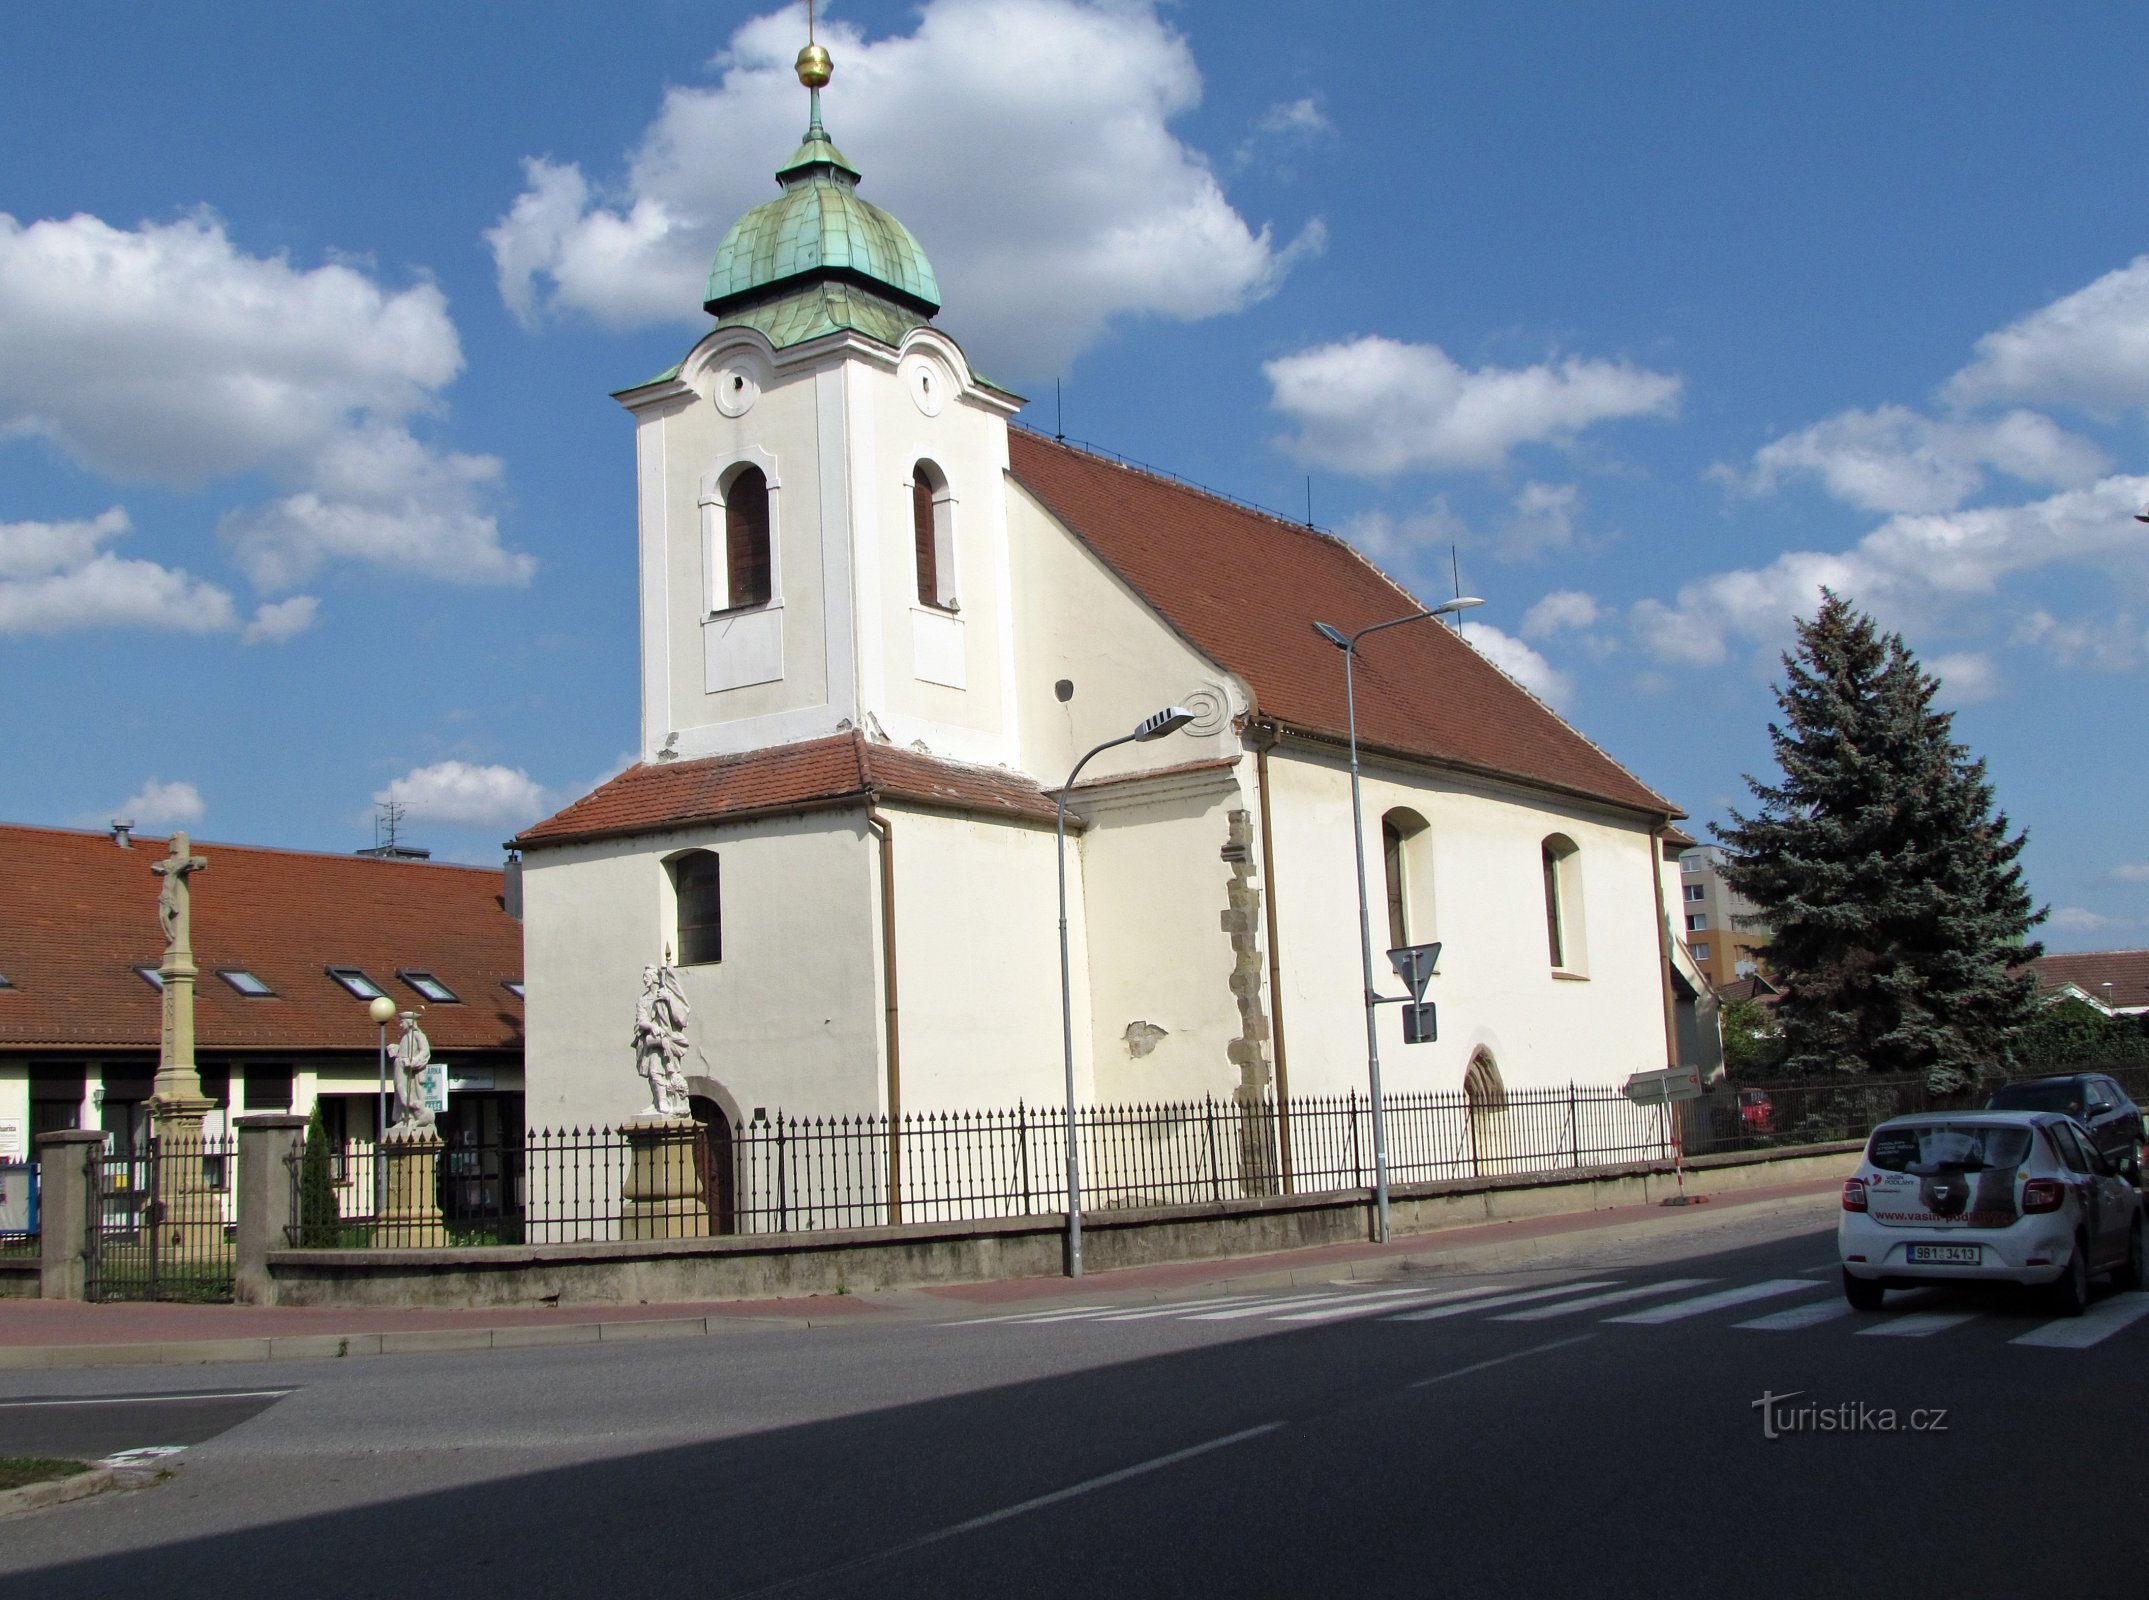 Veselí nad Moravou - Église de la Vierge Marie